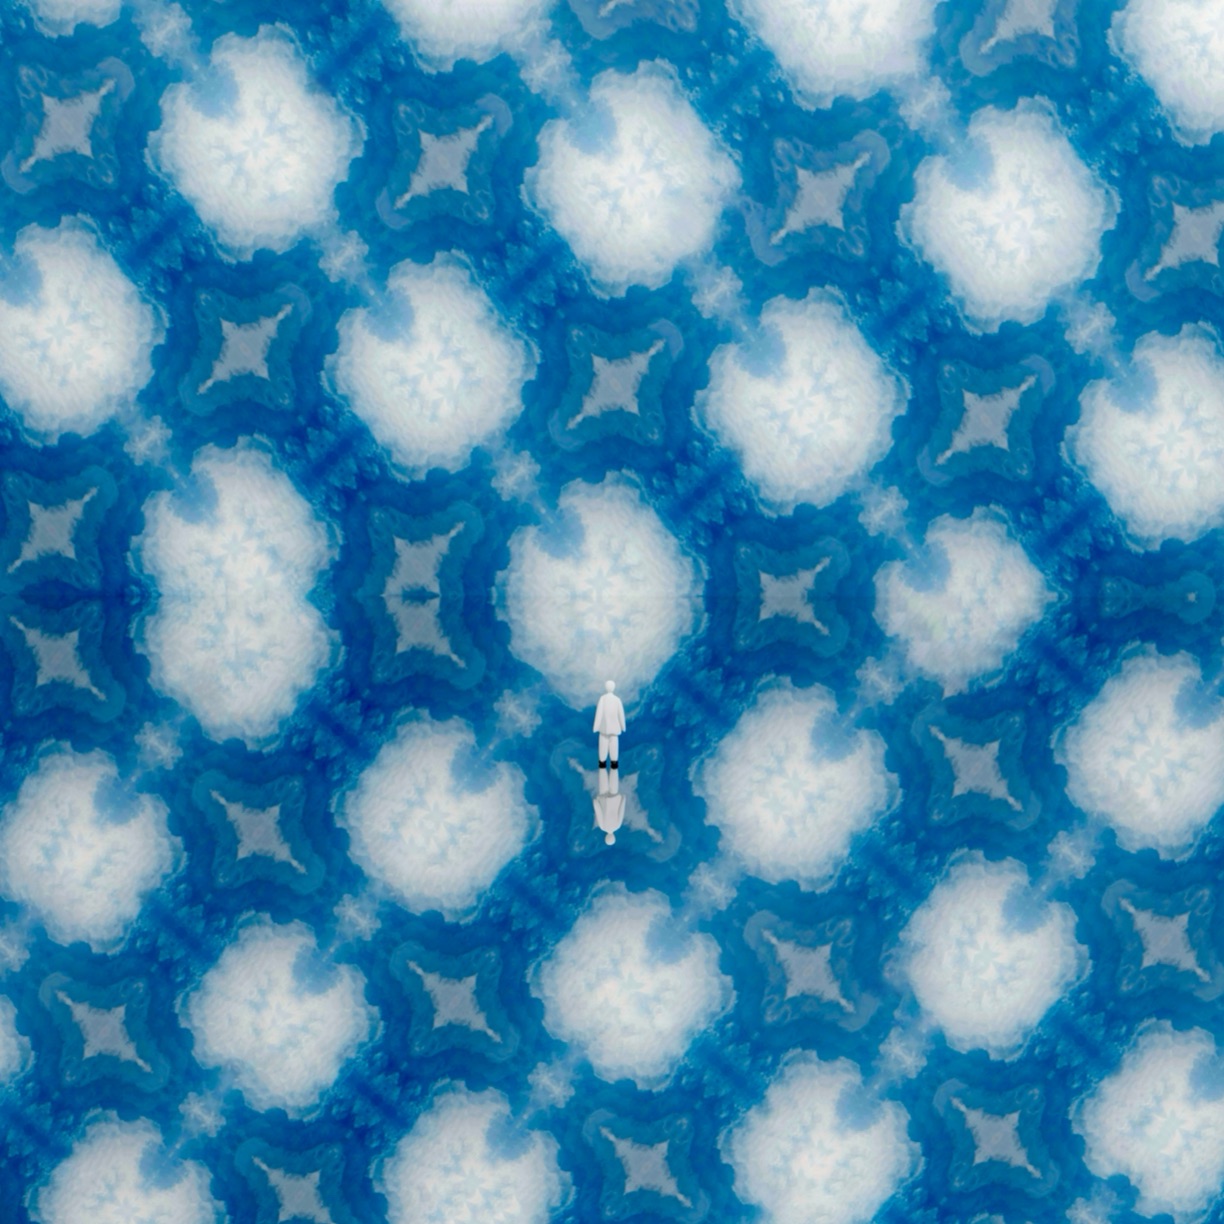 Atsushigraphの作品「Cloud Pocket」の画像です。